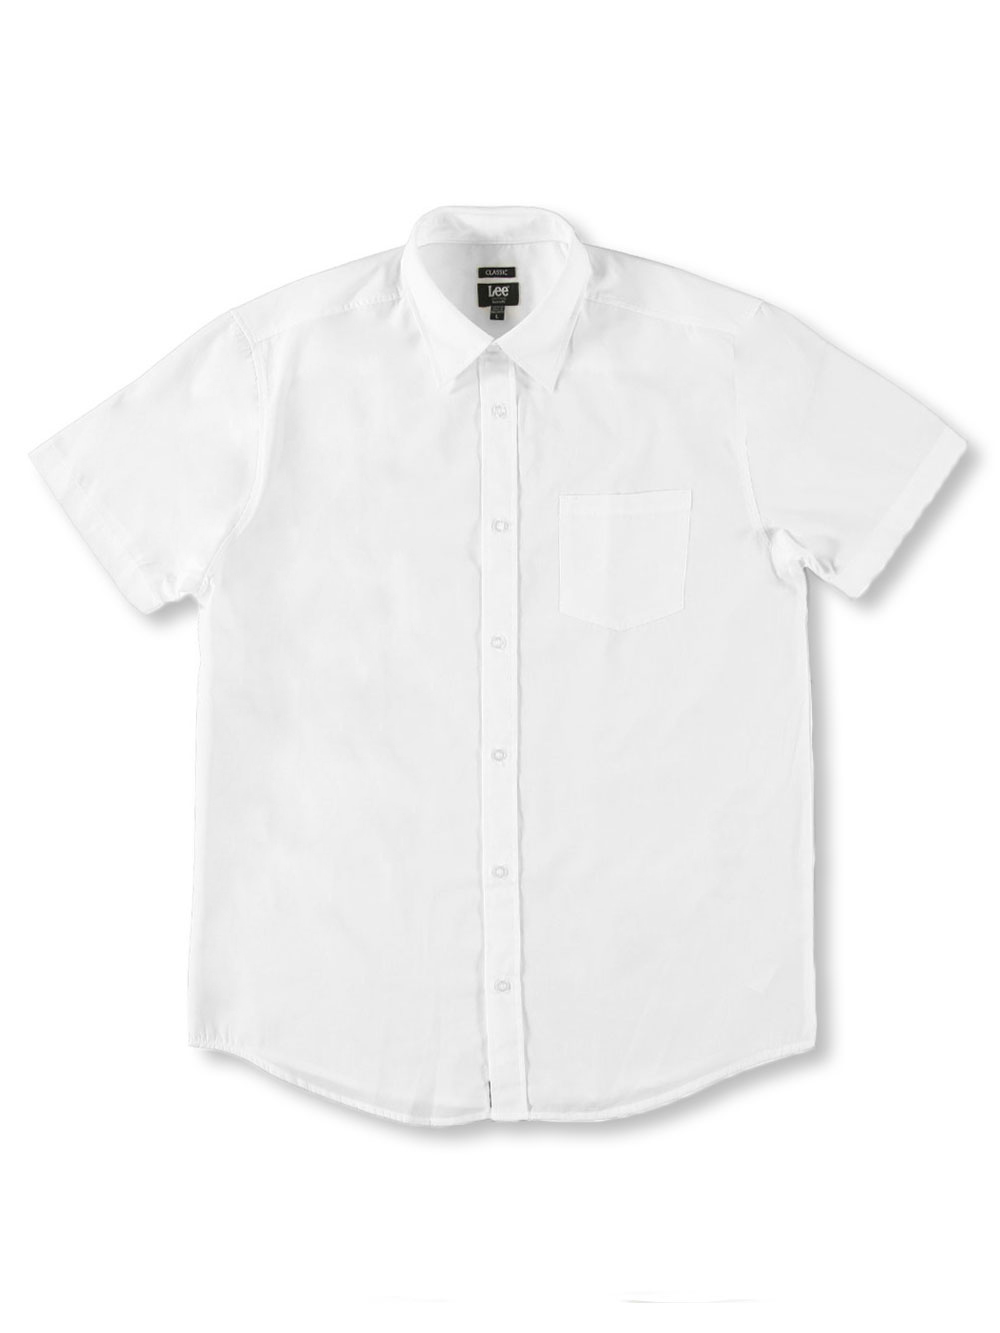 LEE Boys Lee Men's Uniforms S/S Button-Down Shirt (Young Men's Sizes S - XL)